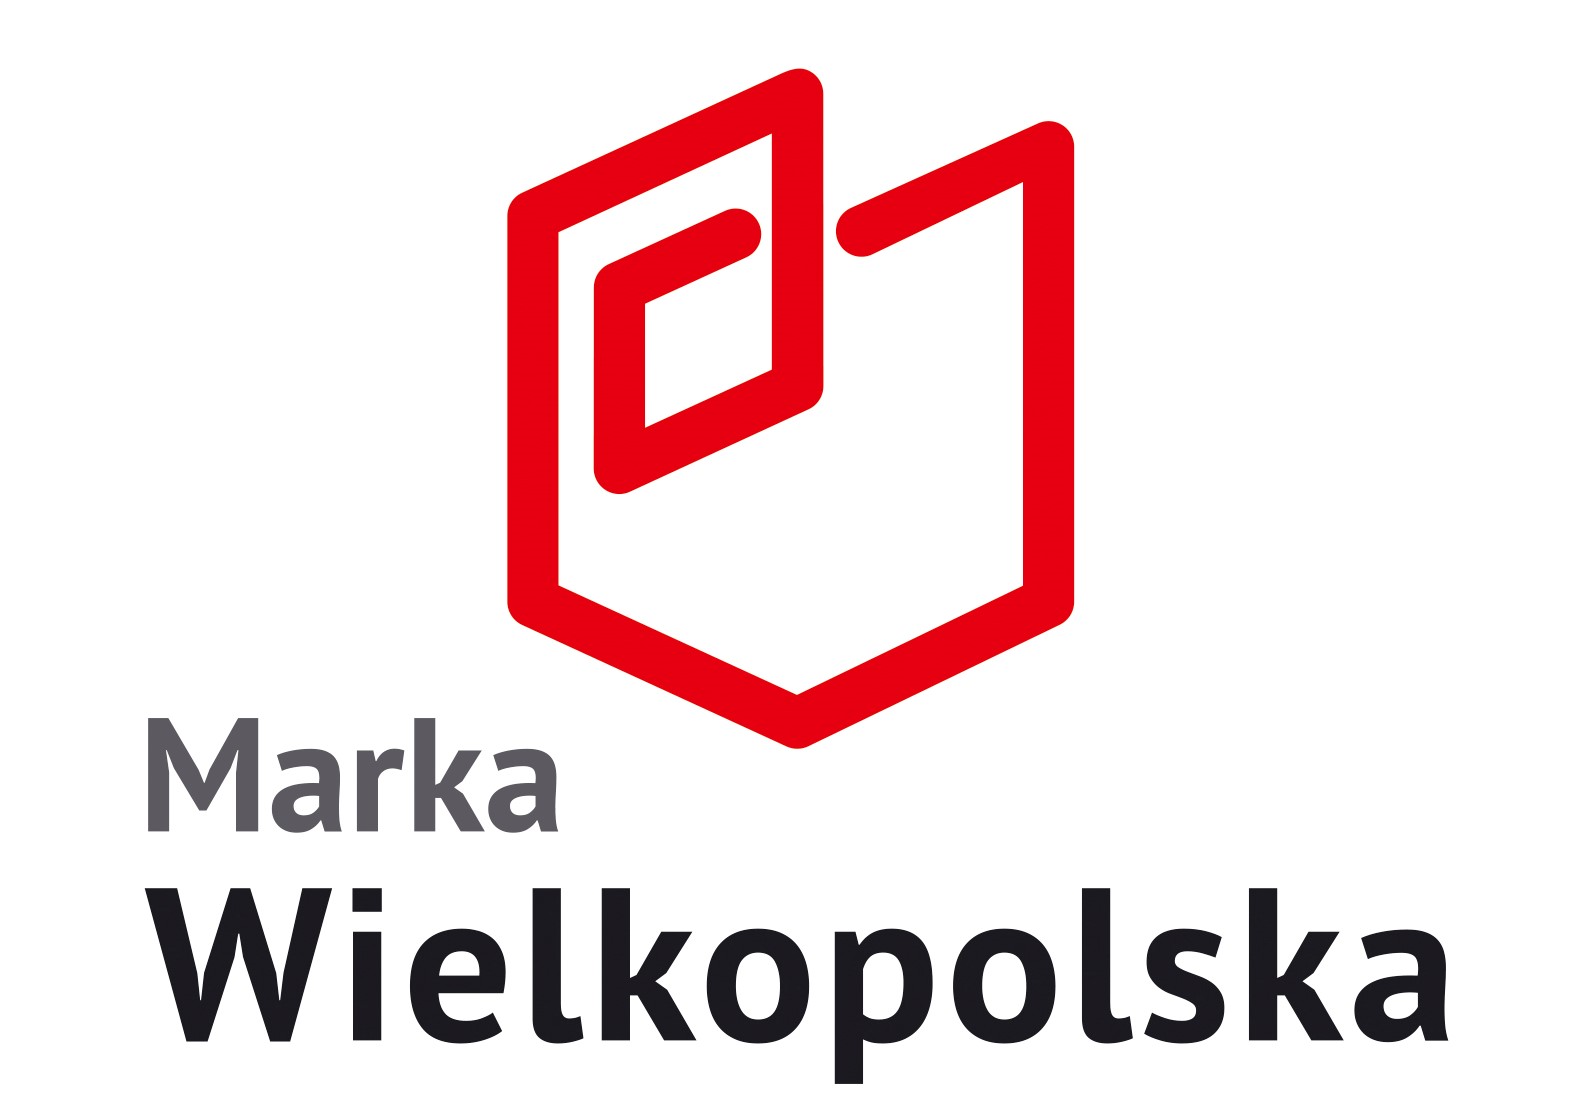 Marka Wielkopolska - logo